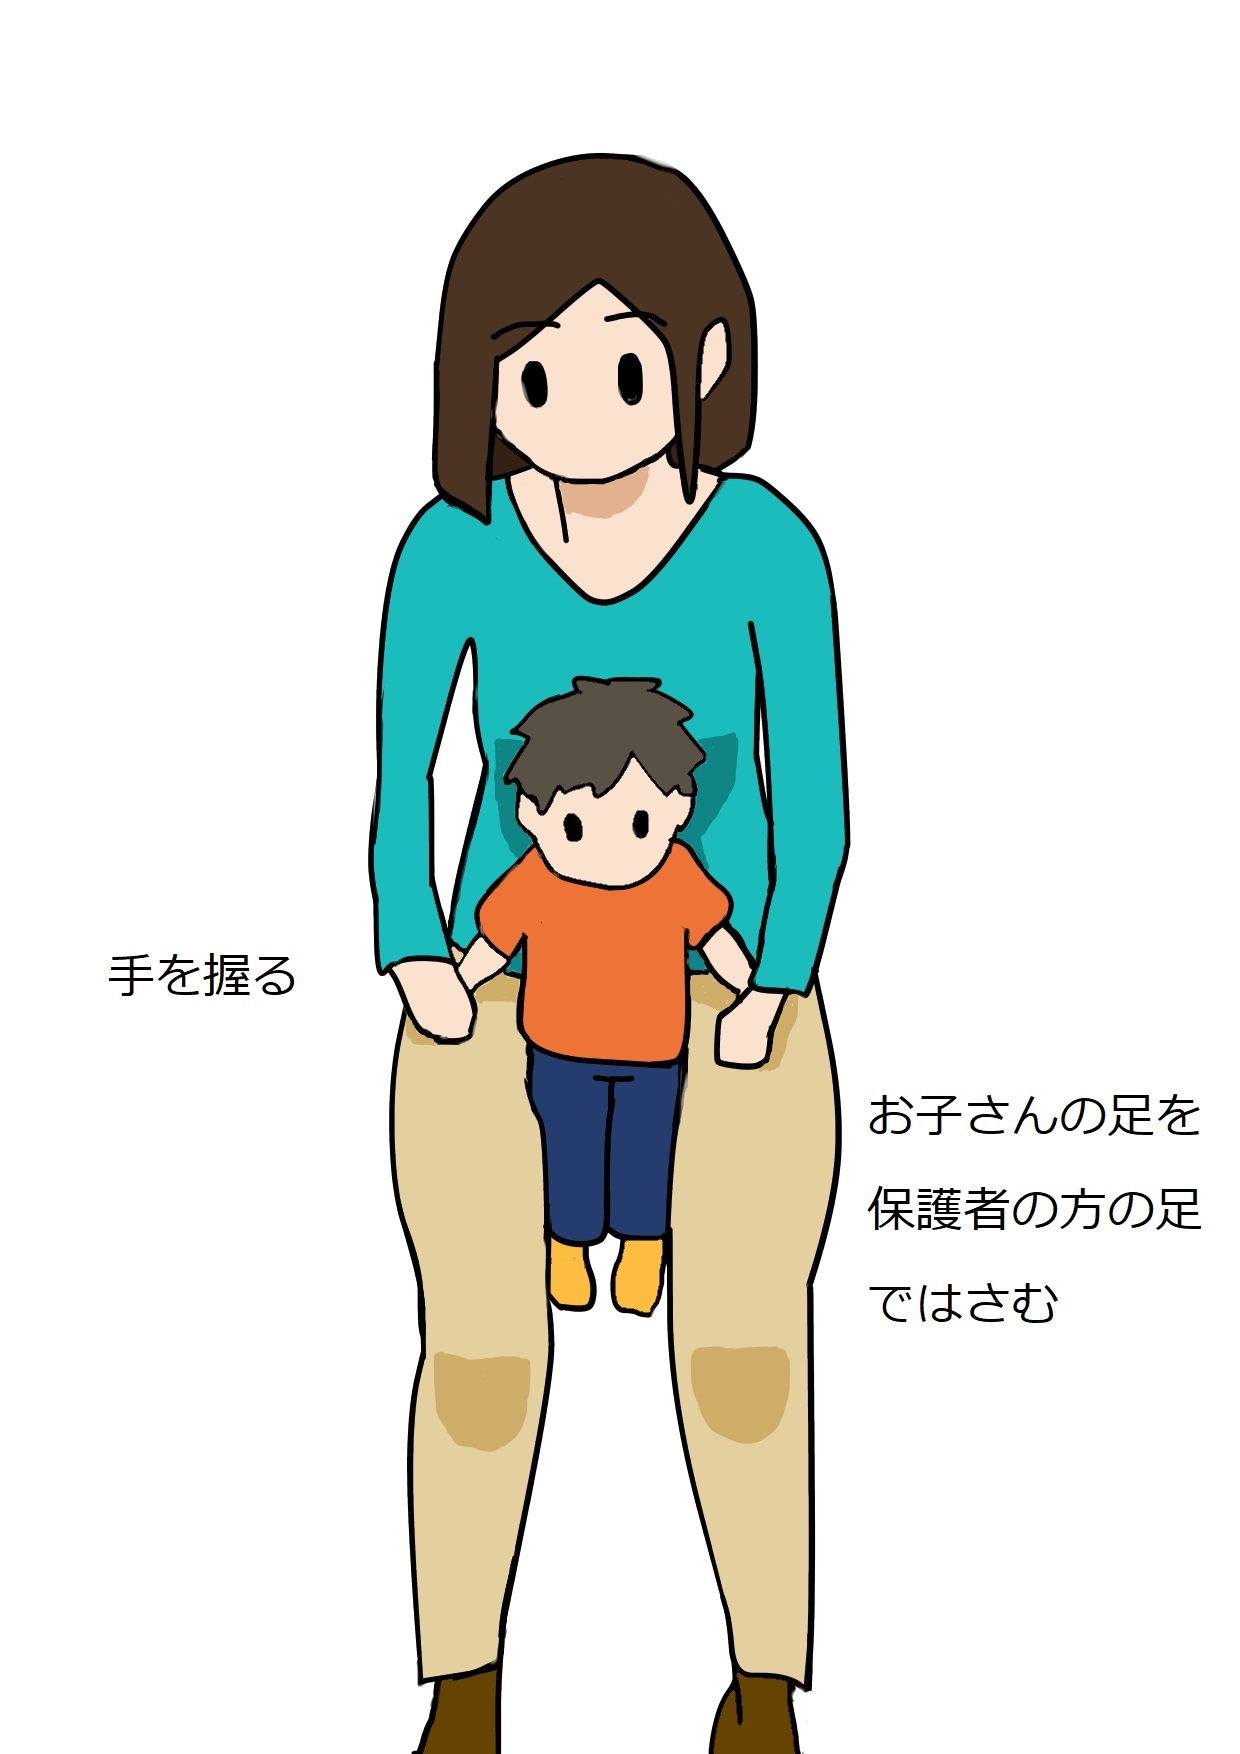 お子さんの手を握り、足を保護者の方の足ではさむ座り方 - 乳幼児の保護者様へ